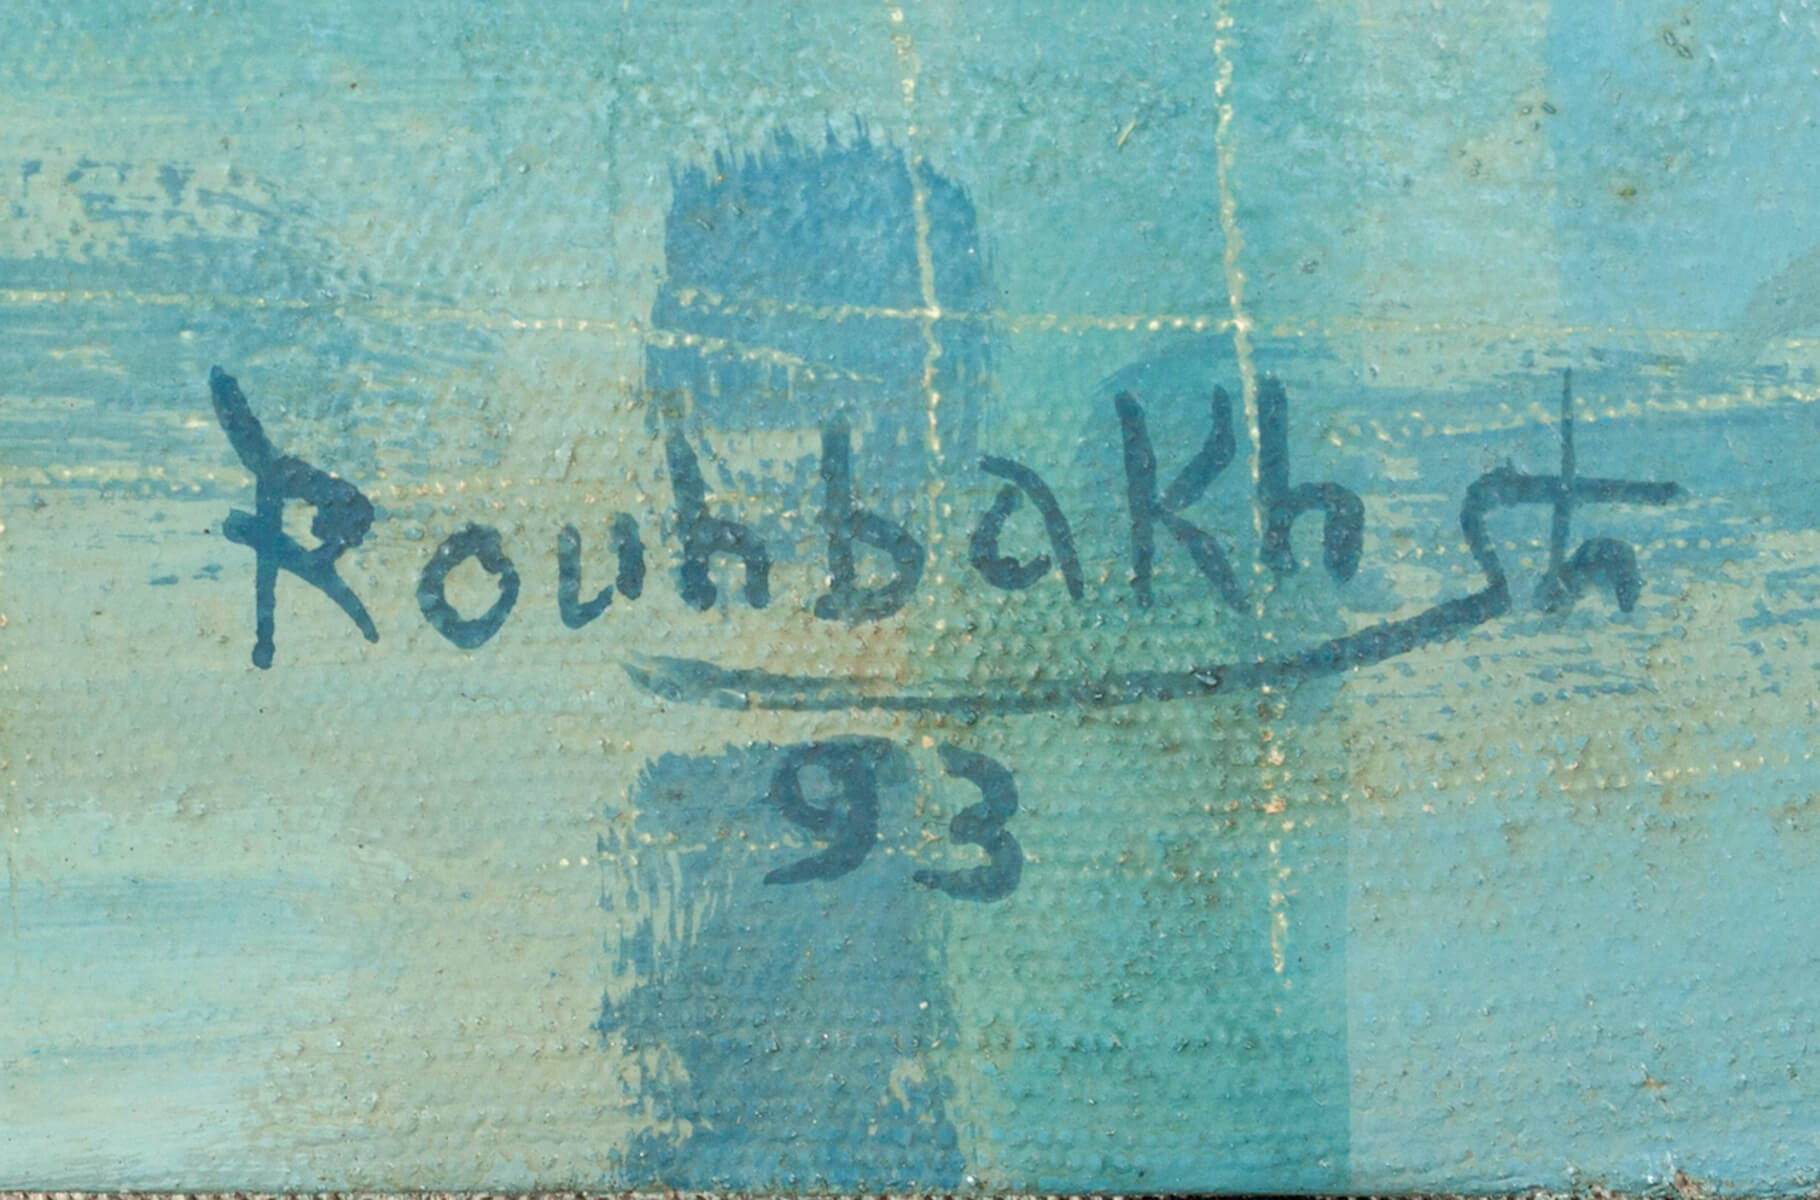 Jafar ROUHBAKHSH (1938/40-1996) Iranian - French